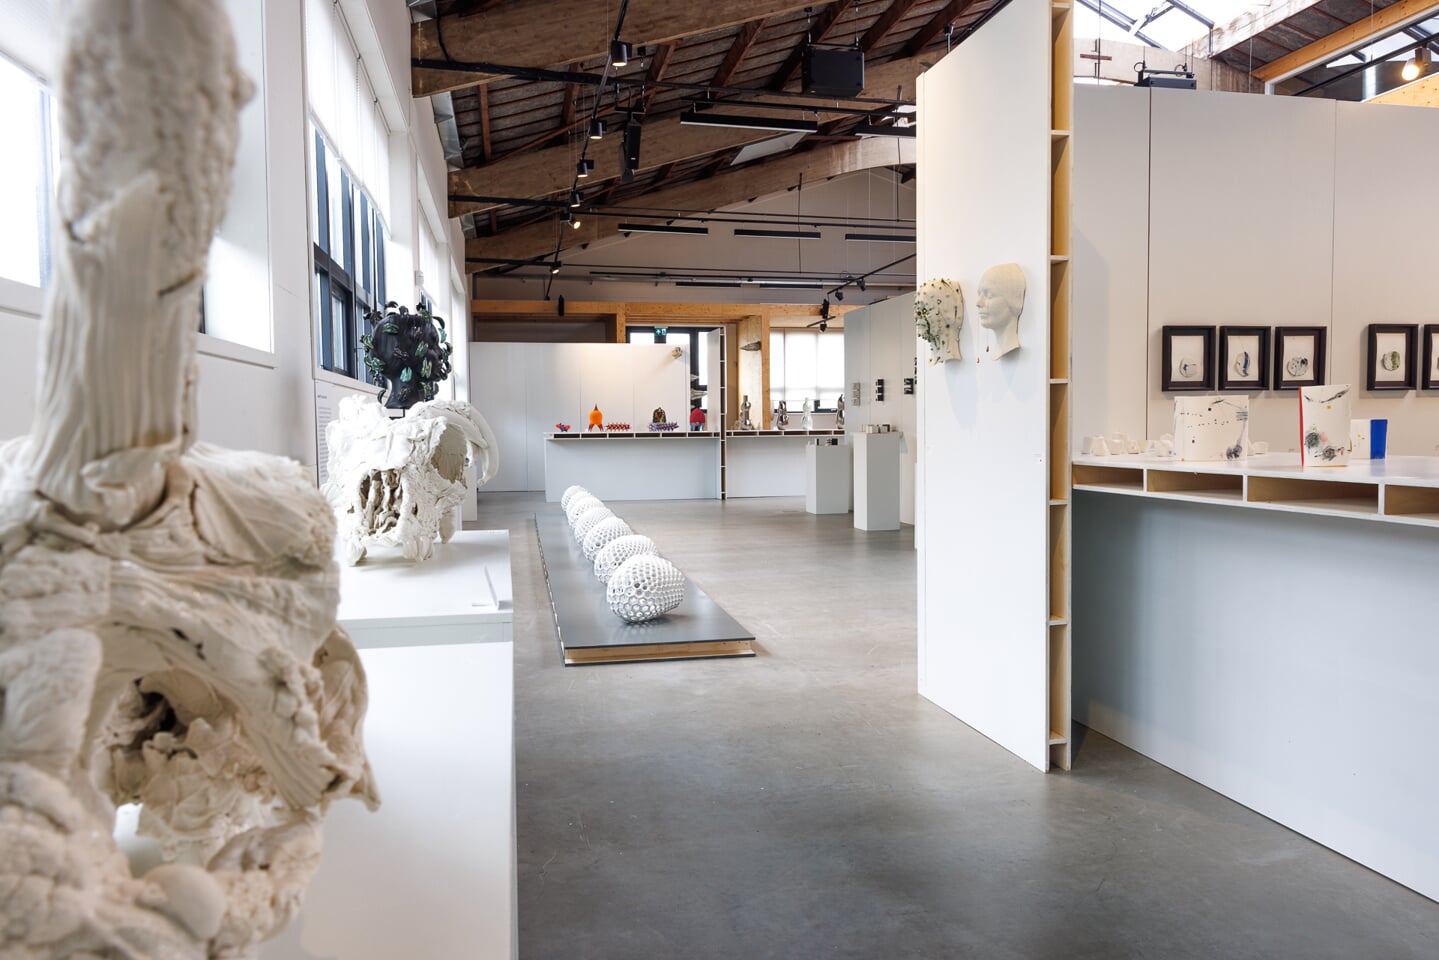 Laat je verrassen door de veelzijdigheid van porselein in de nieuwe expositie bij kunstgarage Franx.